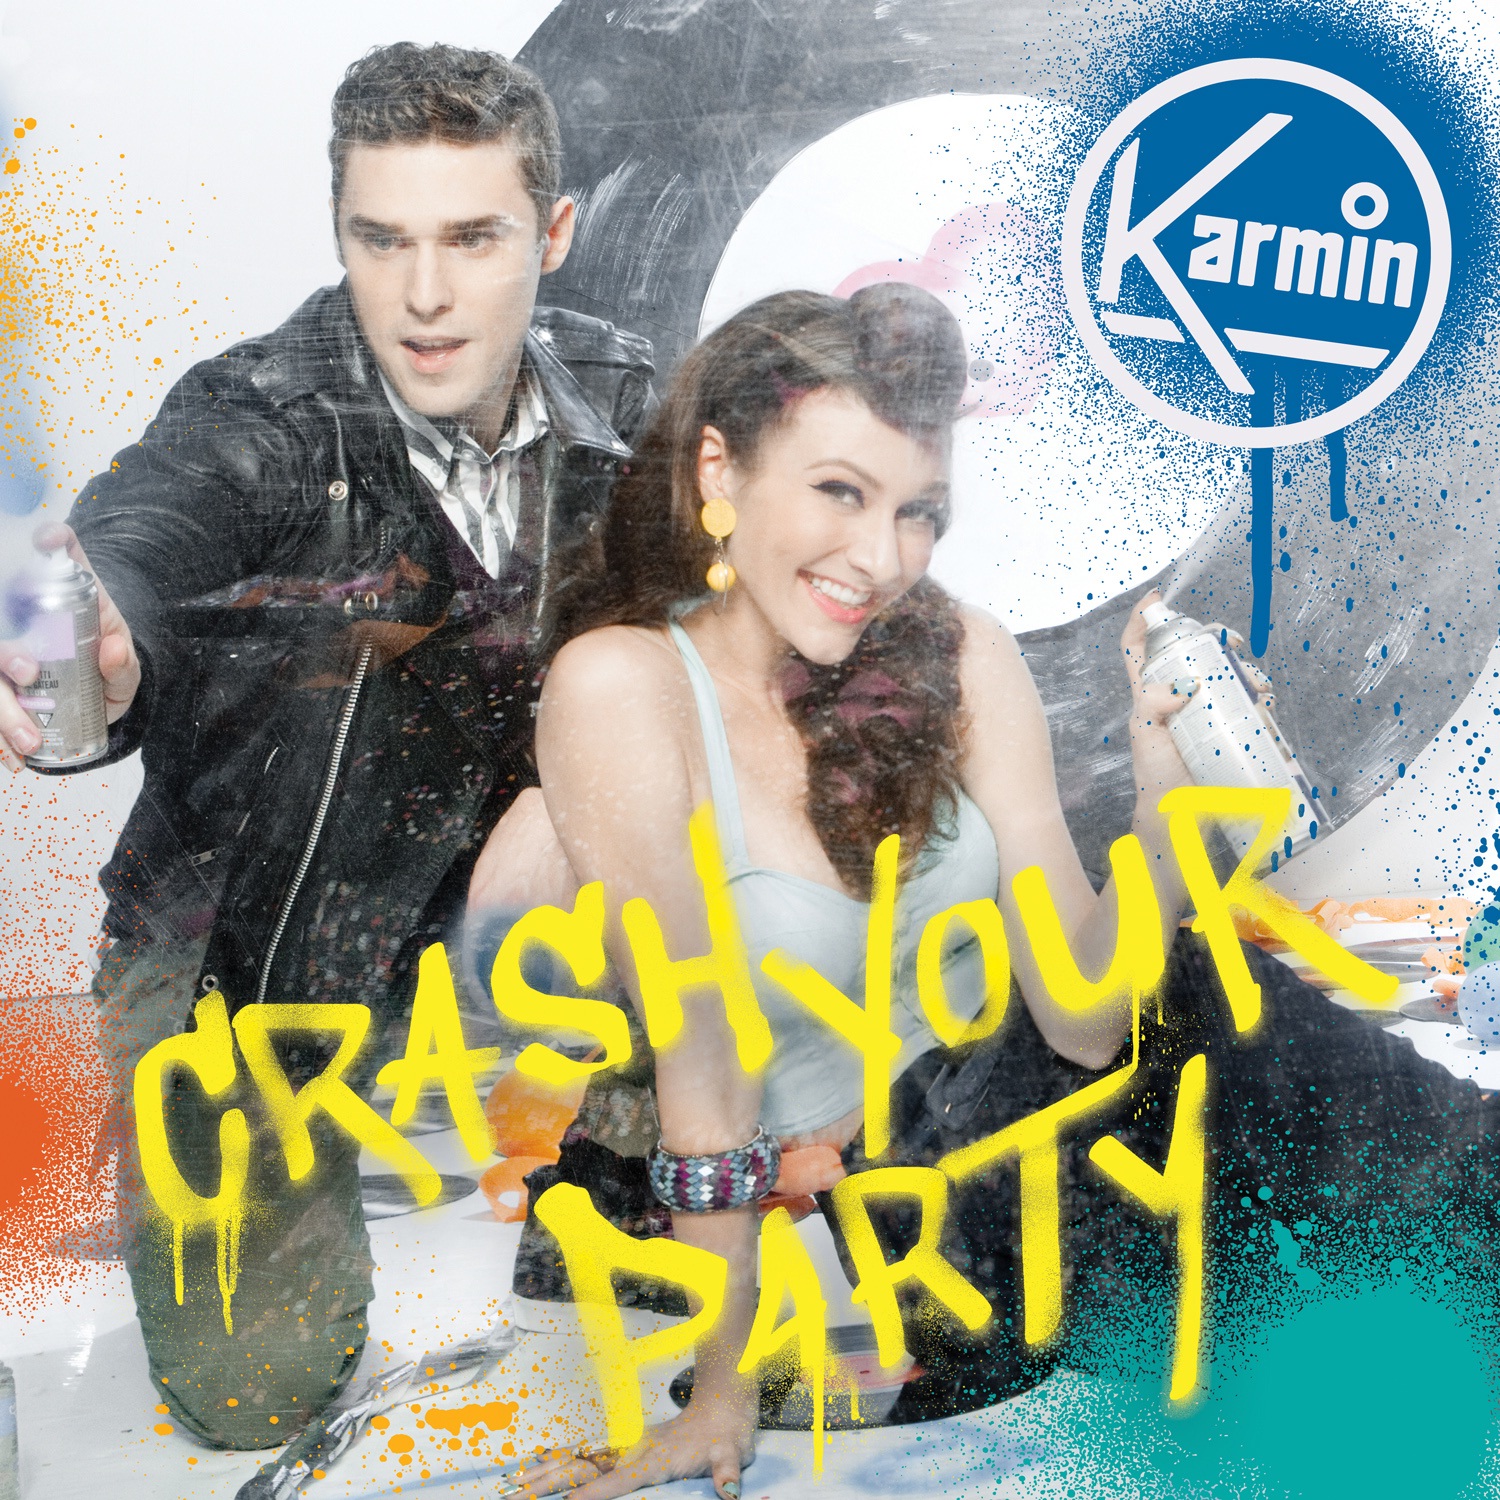 Karmin Crash Your Party My Site